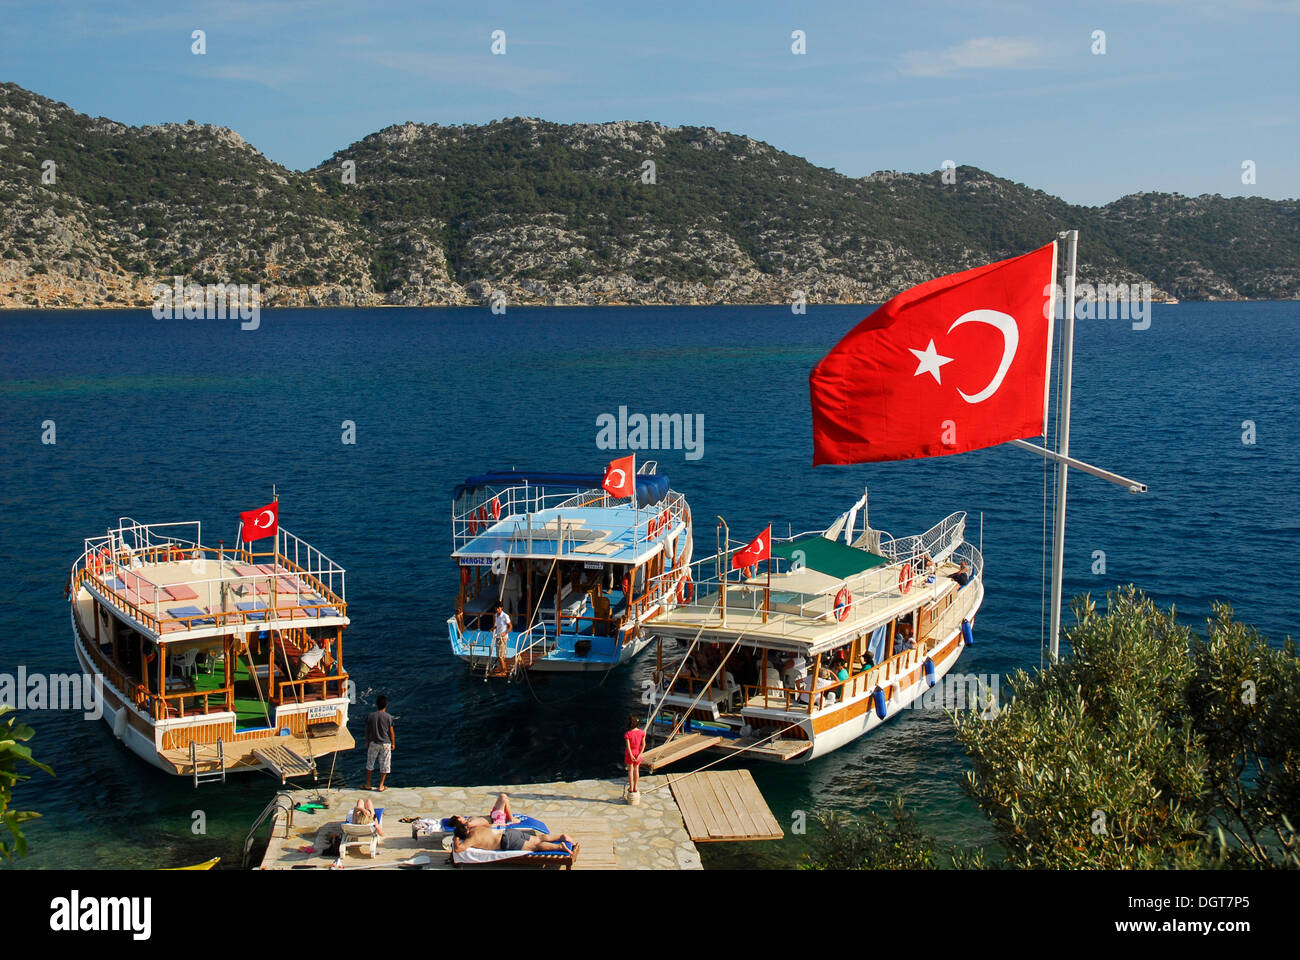 Turkish flag and boats on the quayside, village of Kale, Kalekoey or Simena, Kekova Bay, Lycian coast, Antalya Province Stock Photo